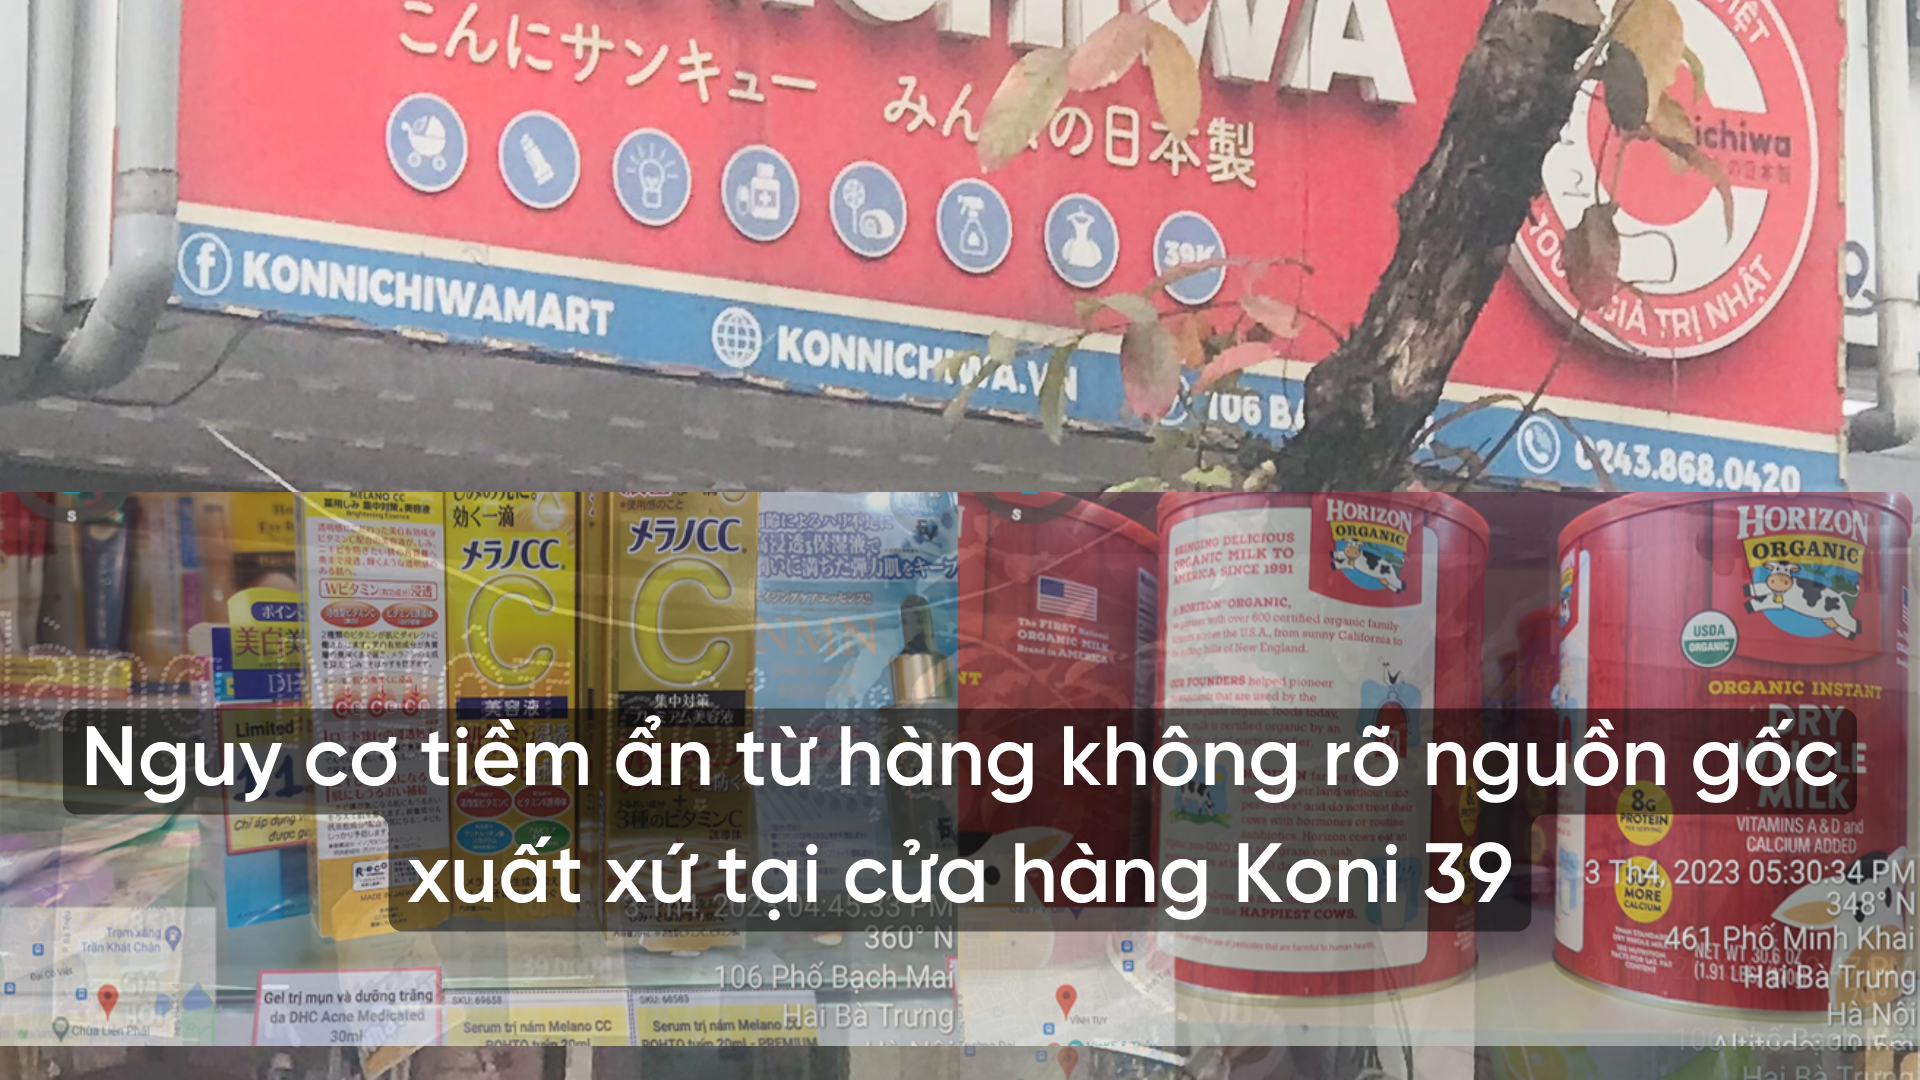 Nhiều nguy cơ tiềm ẩn từ hàng không rõ nguồn gốc, xuất xứ tại cửa hàng Konni39